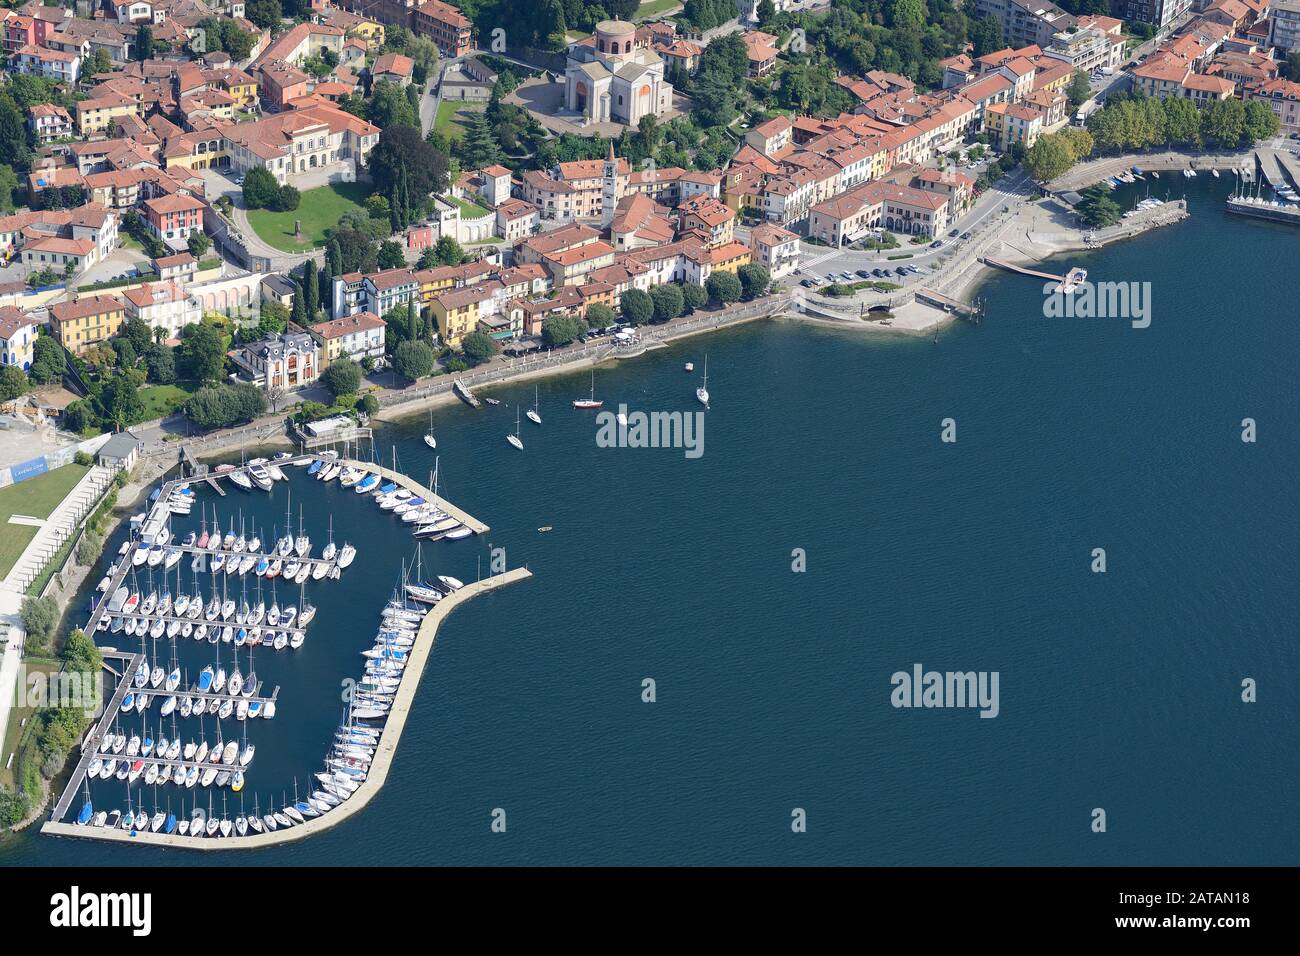 VUE AÉRIENNE.Ville pittoresque au bord du lac de Laveno.Laveno-Mombello, Lac majeur, province de Varèse, Lombardie, Italie. Banque D'Images